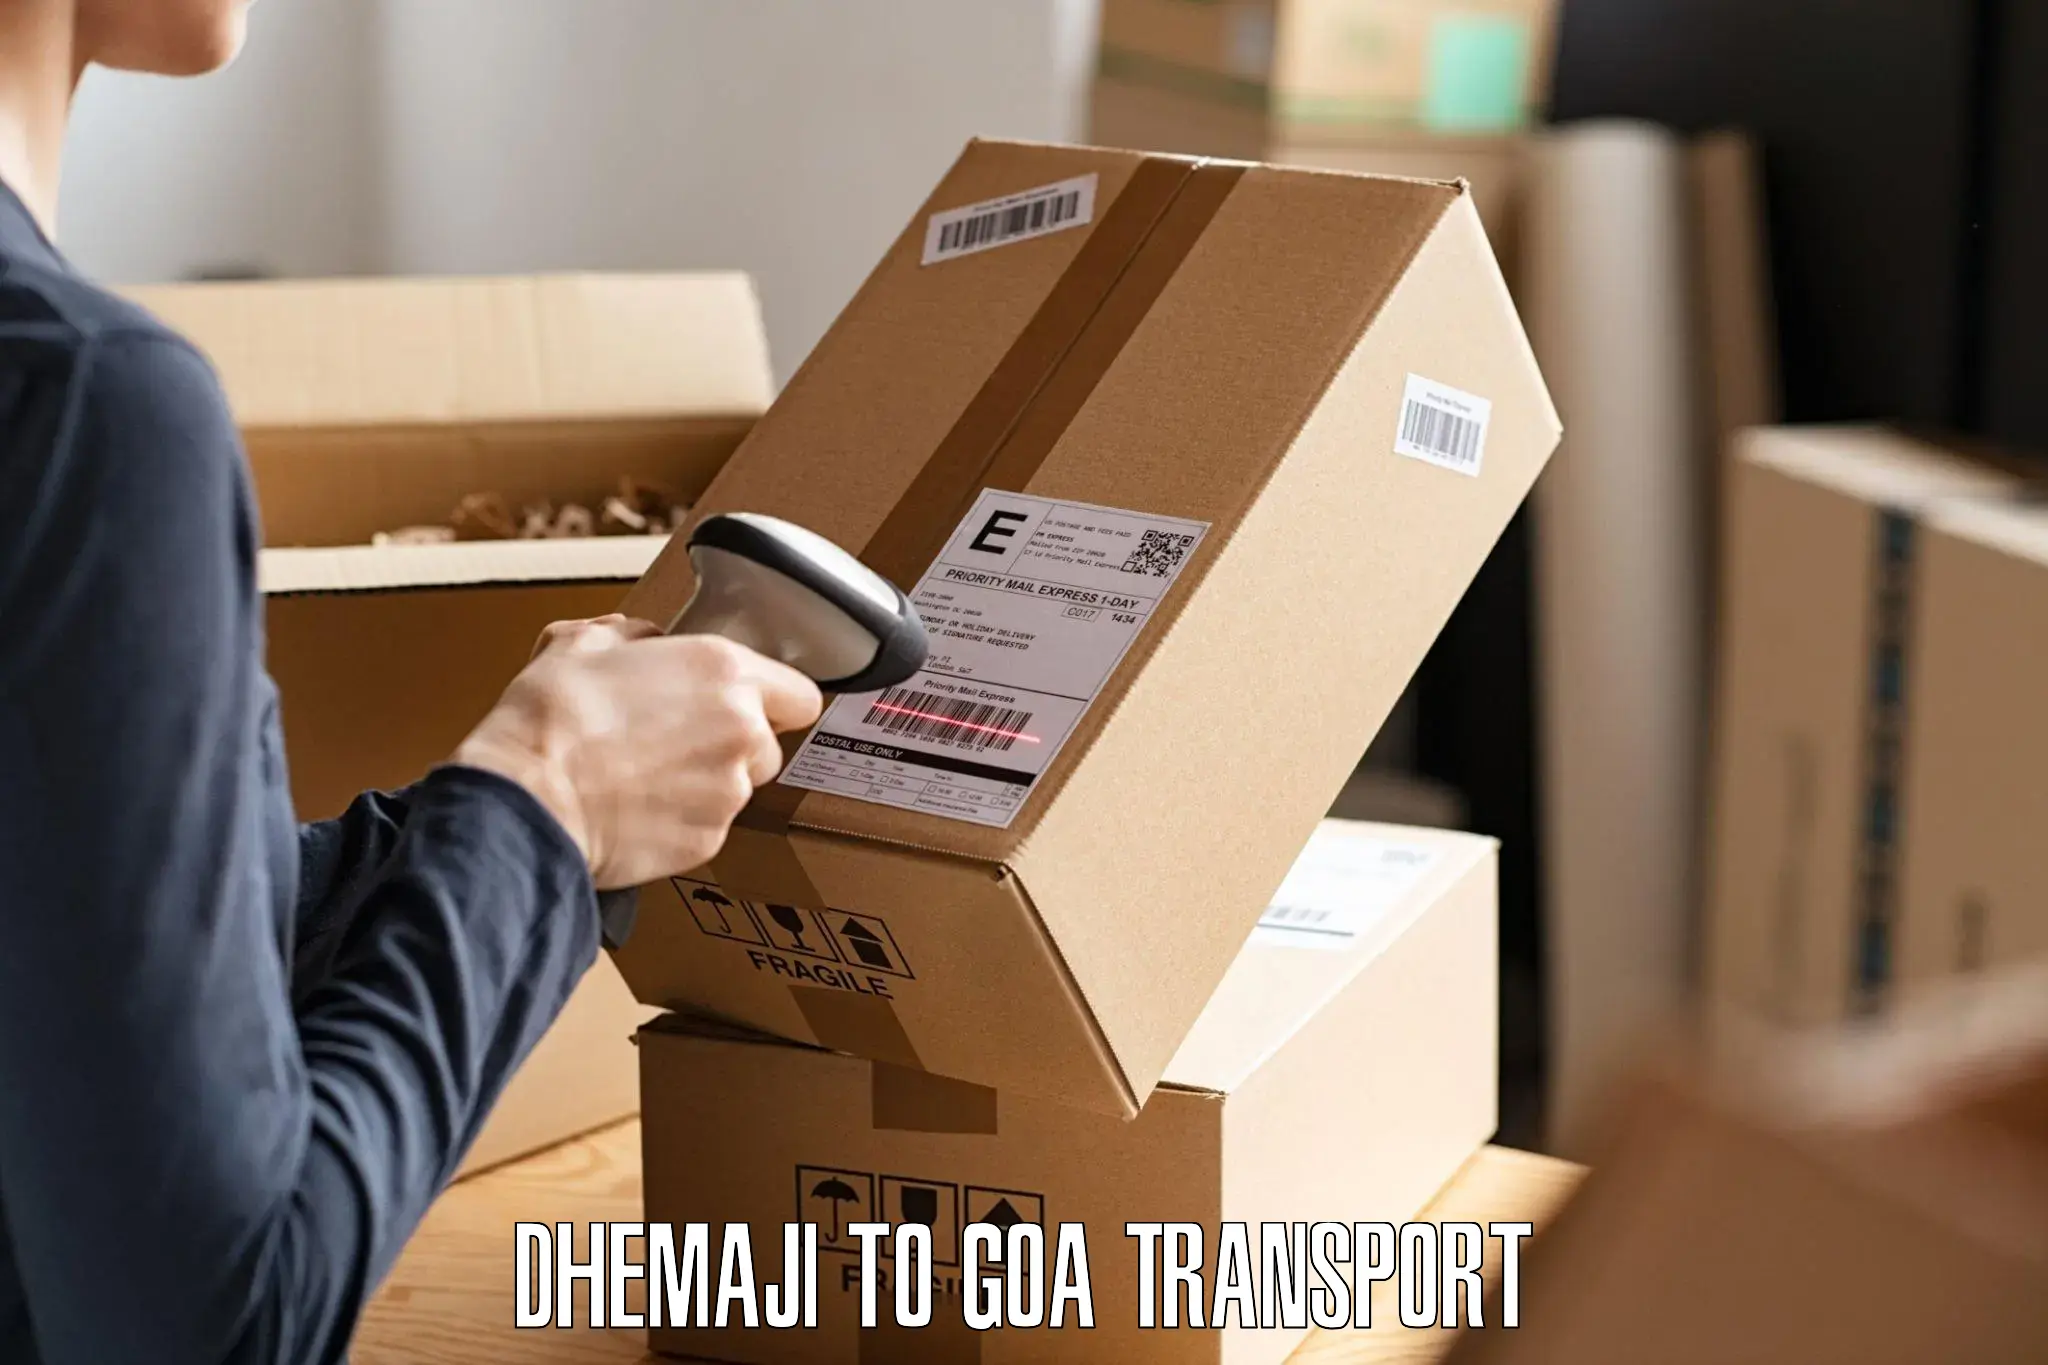 Pick up transport service Dhemaji to Vasco da Gama